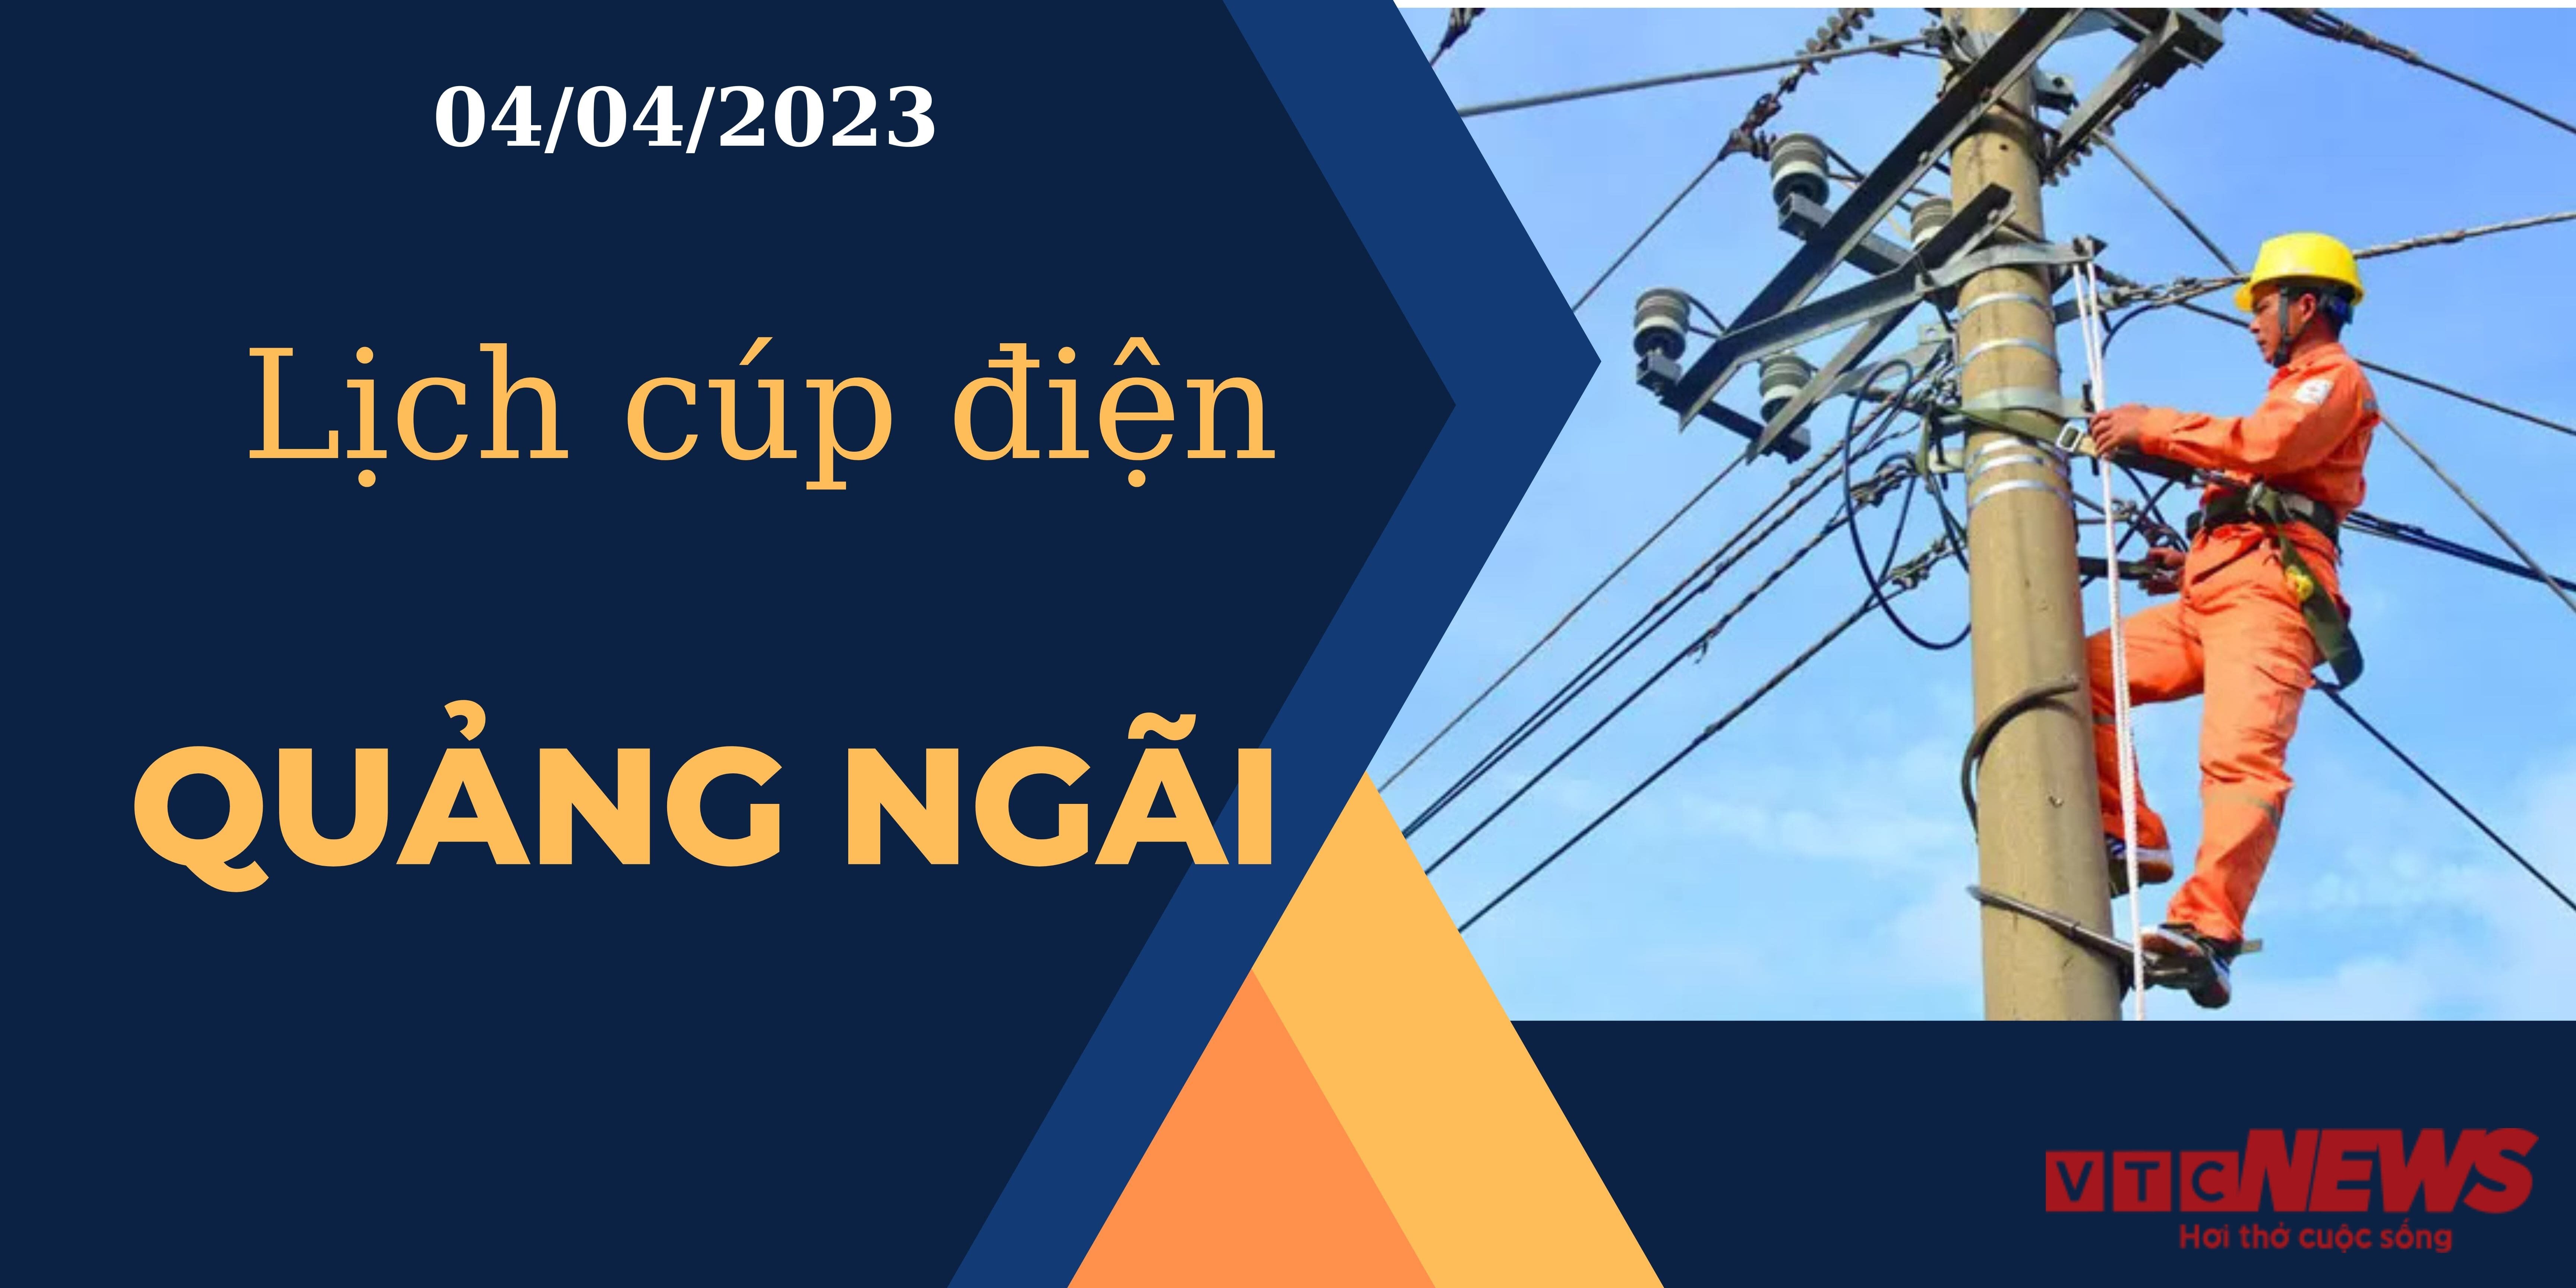 Lịch cúp điện hôm nay tại Quảng Ngãi ngày 04/04/2023 - 1